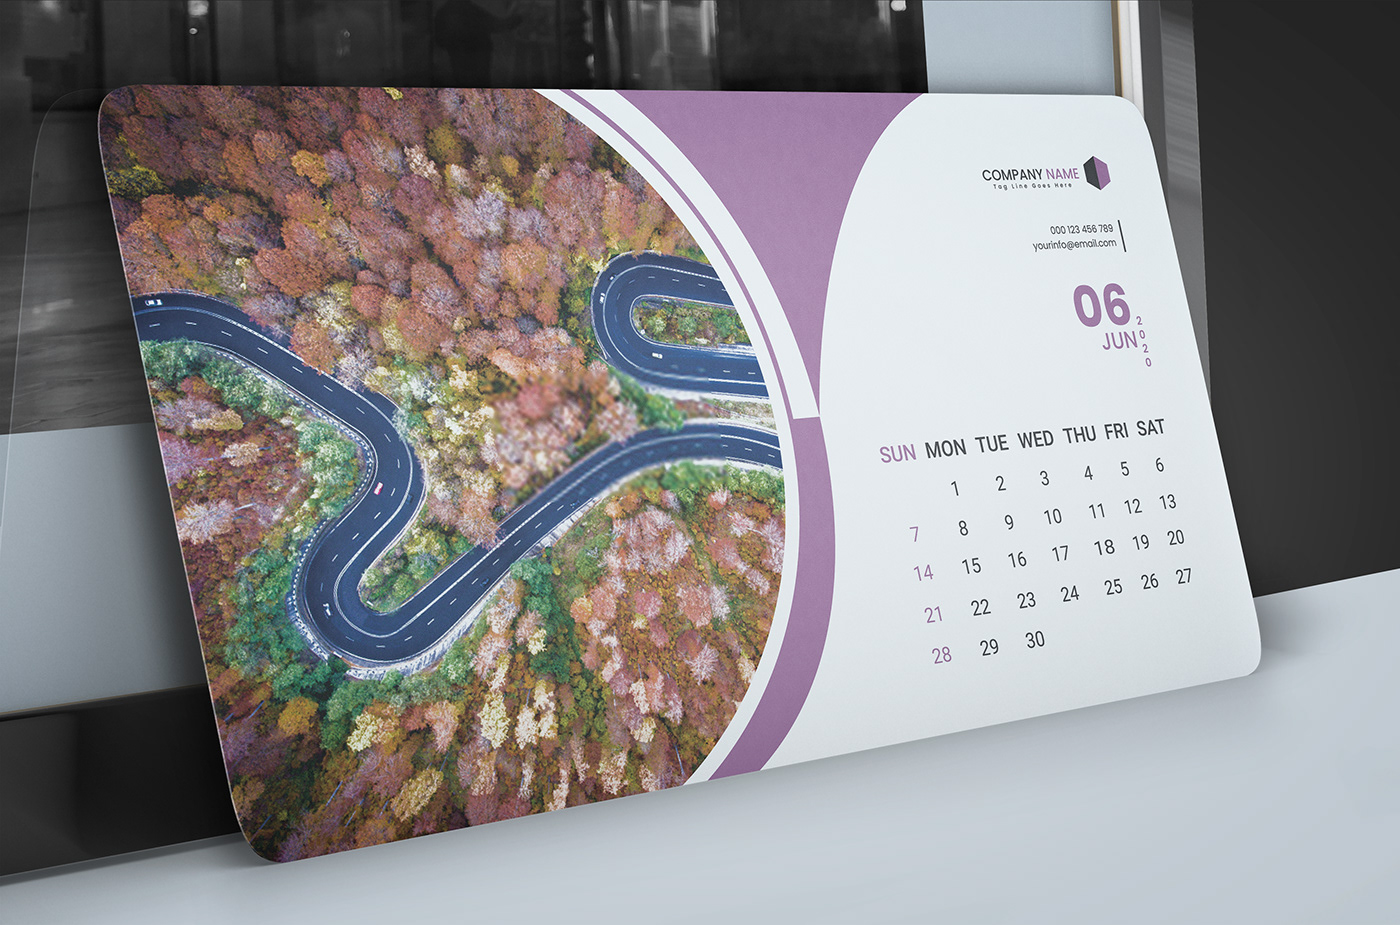 Desk Calendar 2020 Wall calendar 2020 calendar template 2020 desktop calendar 2020 calenda template